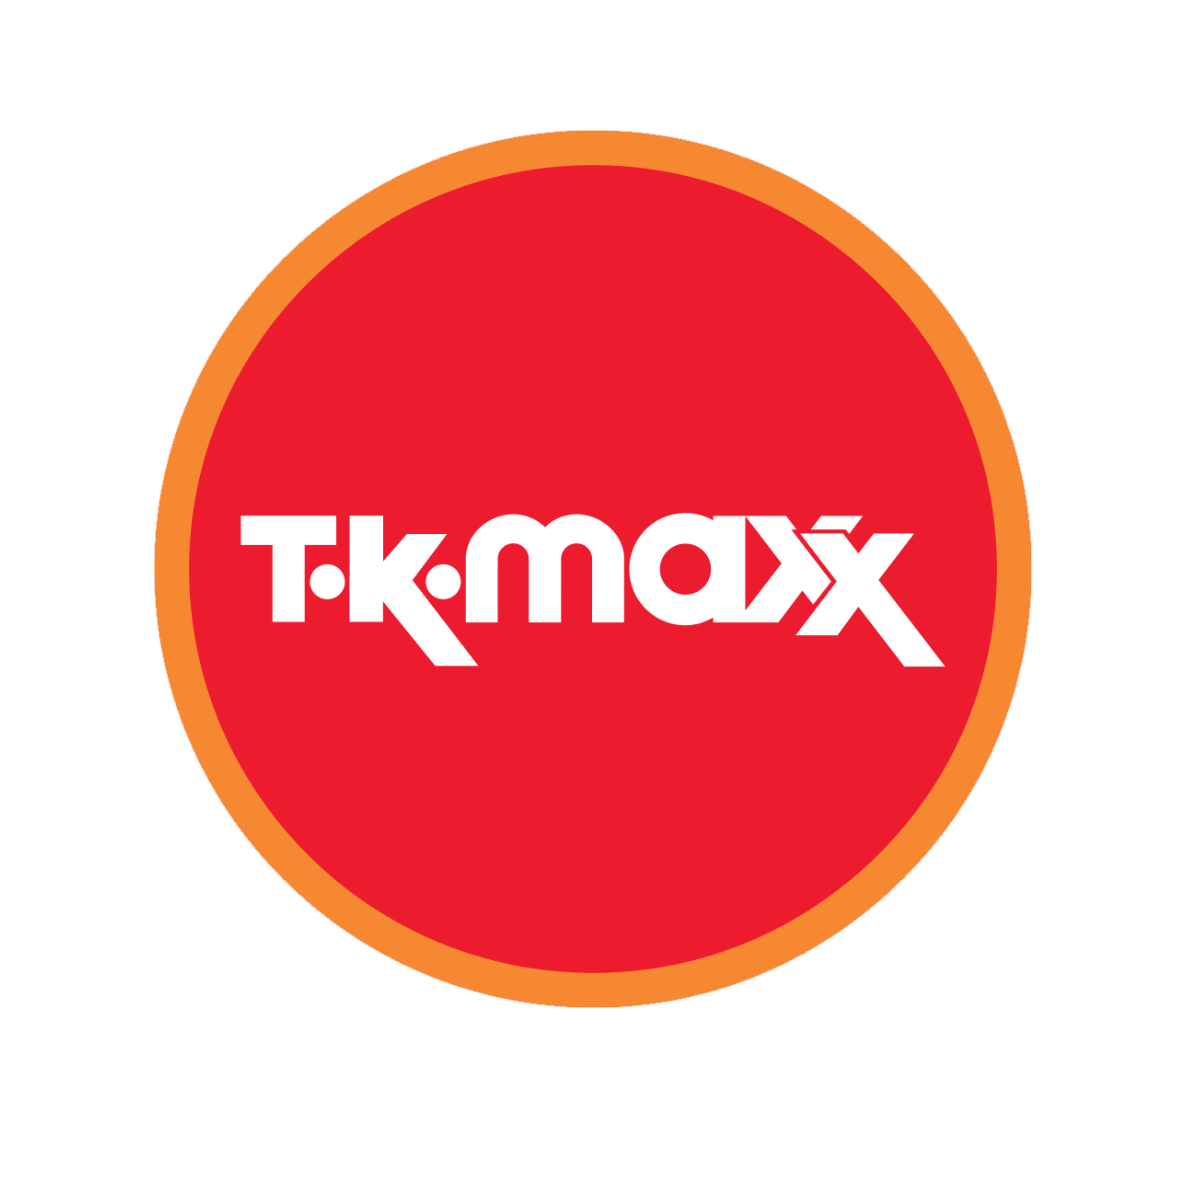 خرید از tkmaxx در ایران